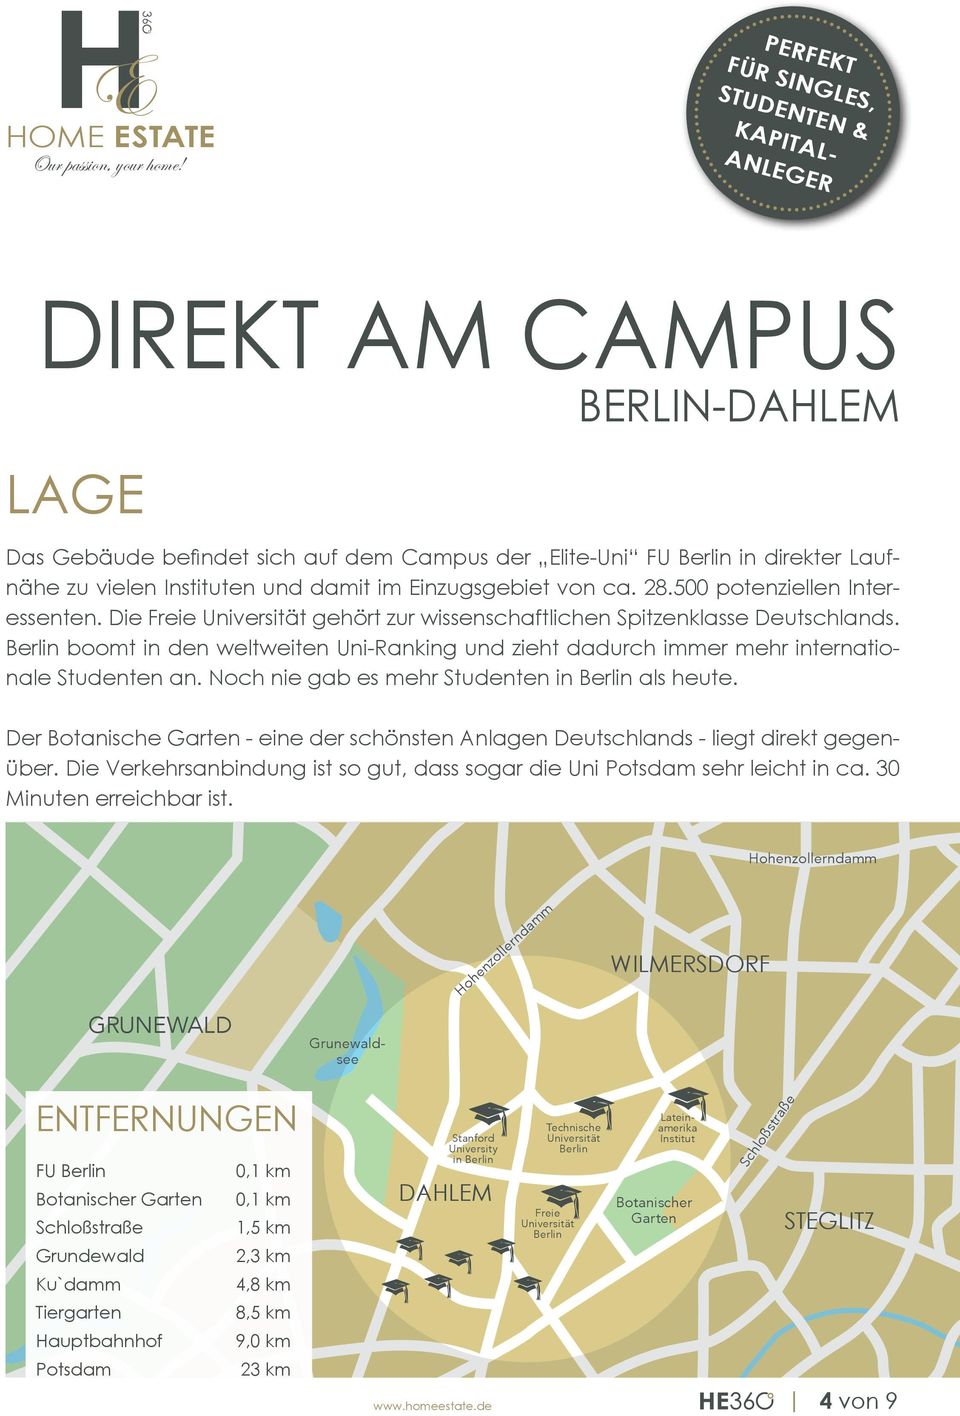 Berlin boomt in den weltweiten Uni-Ranking und zieht dadurch immer mehr internationale Studenten an. Noch nie gab es mehr Studenten in Berlin als heute.